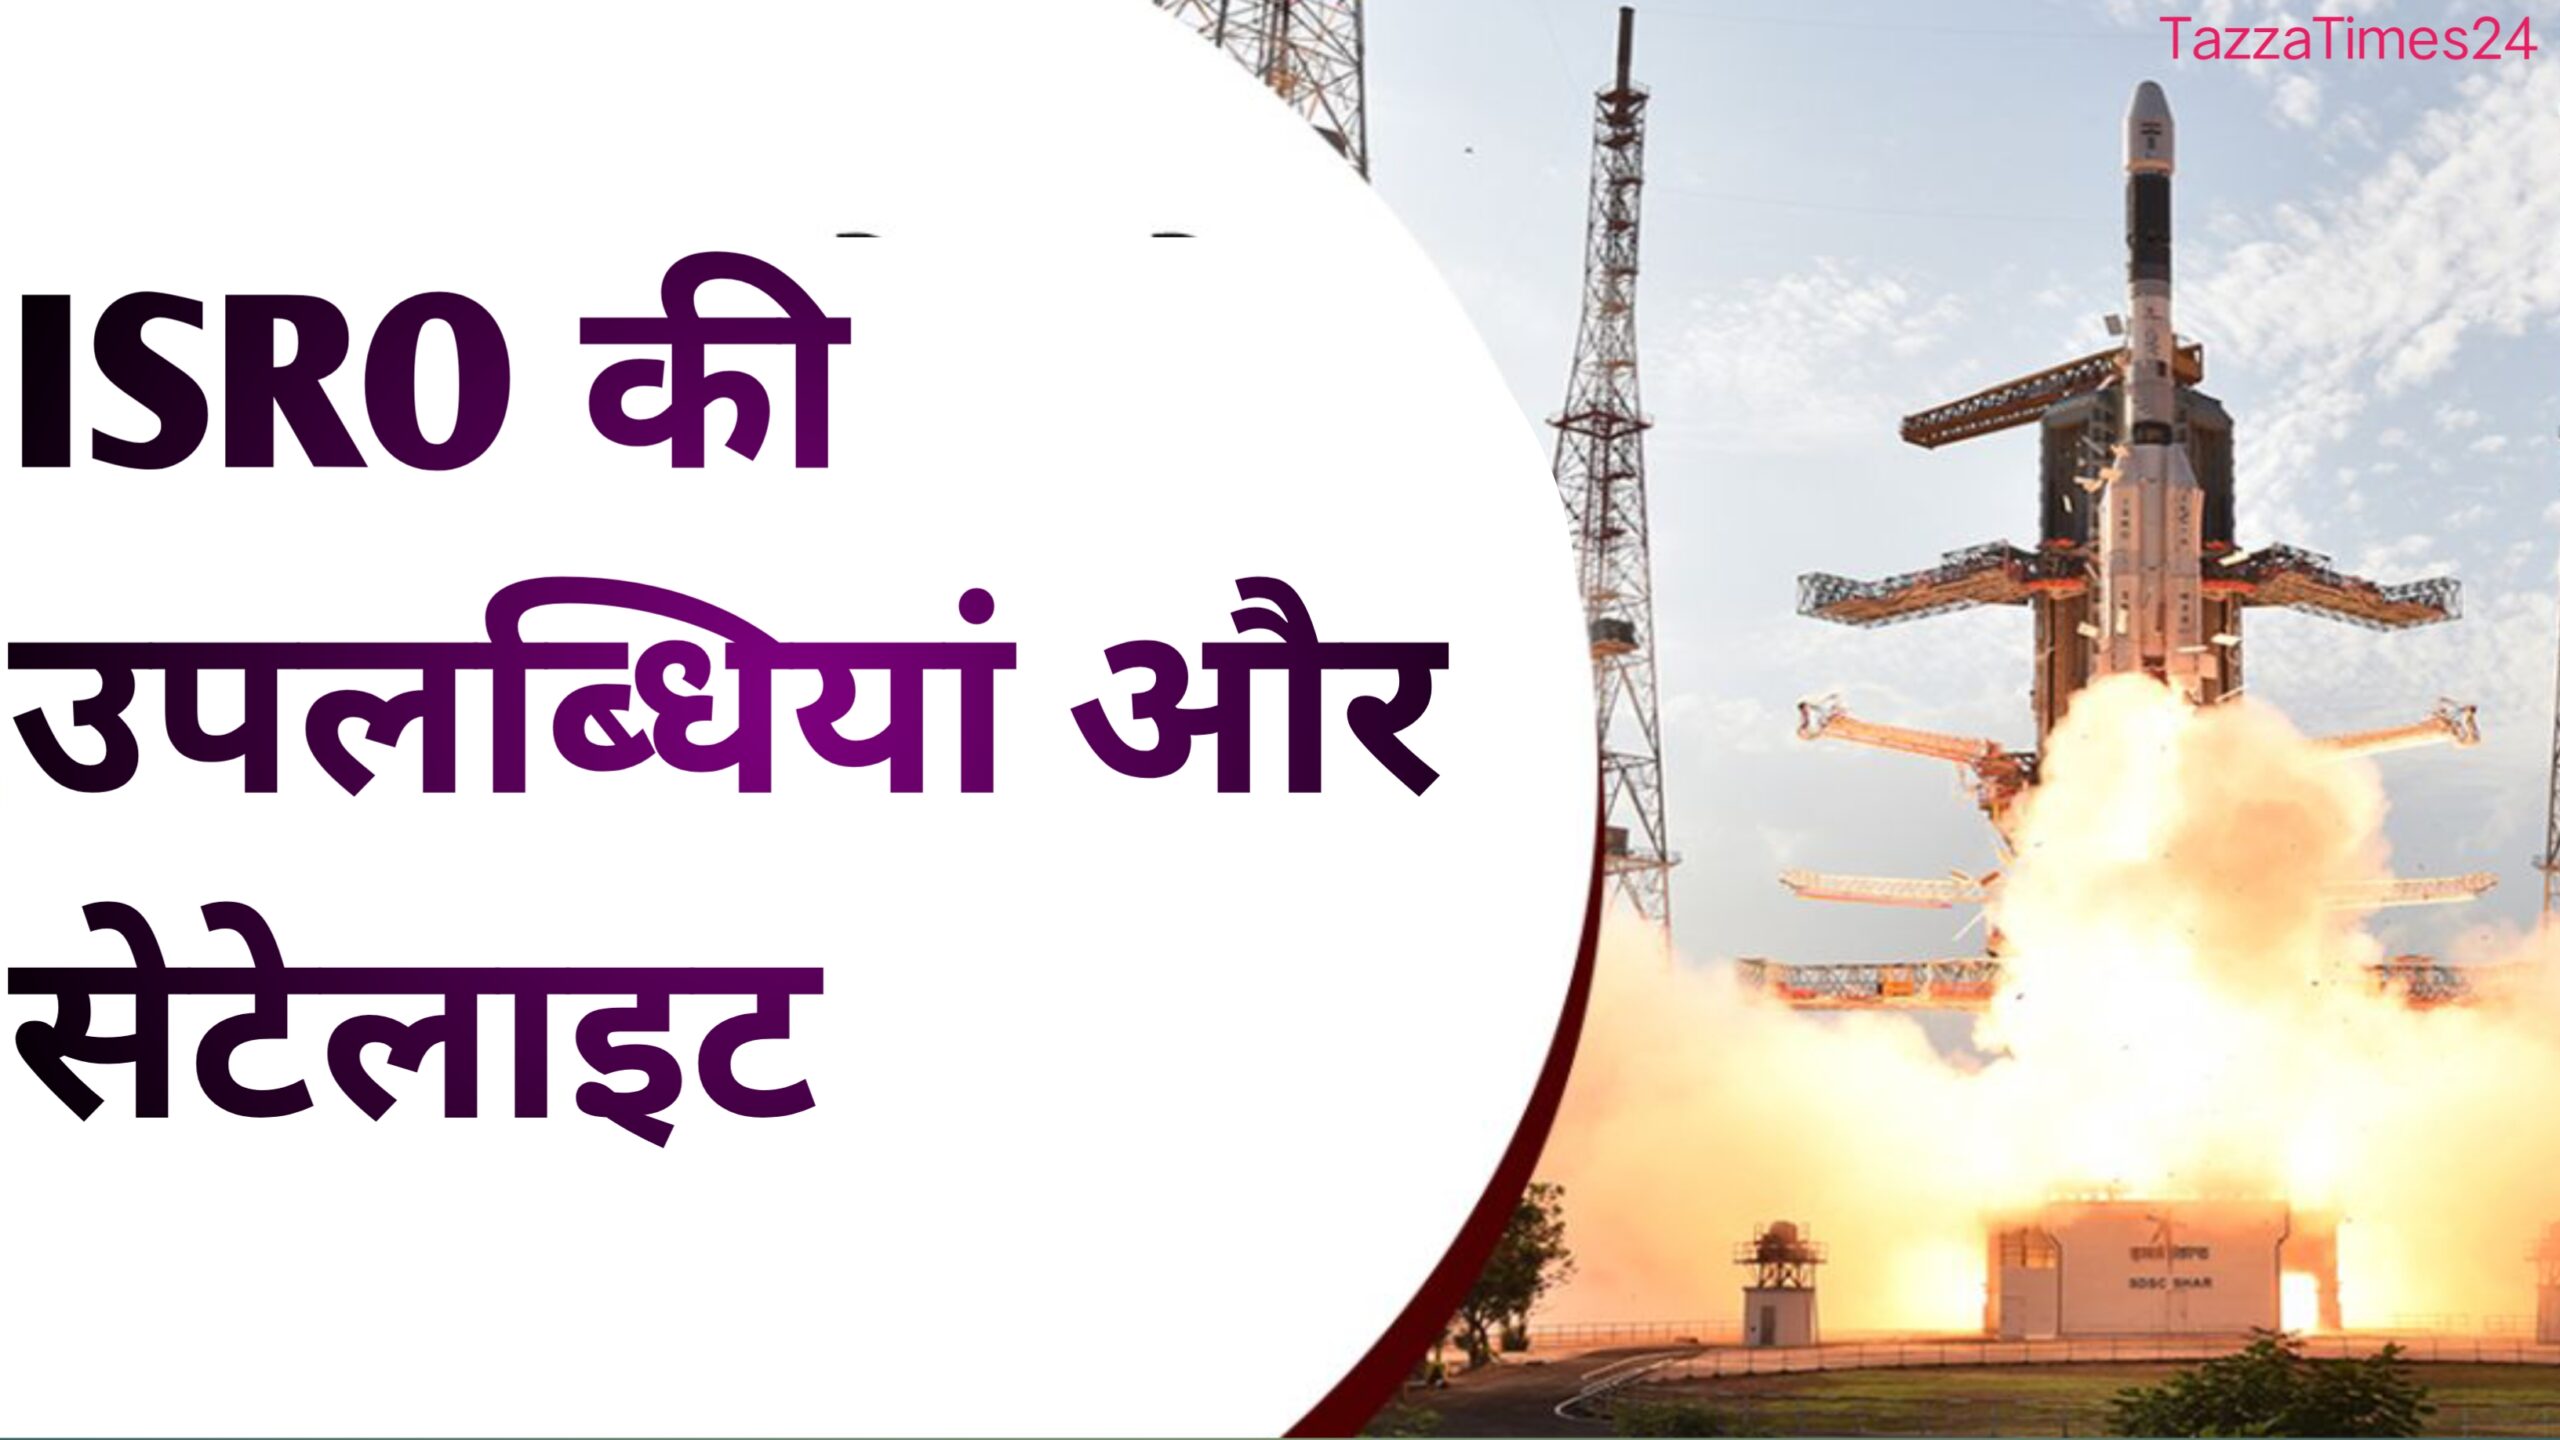 भारतीय अंतरिक्ष अनुसंधान केंद्र (ISRO)